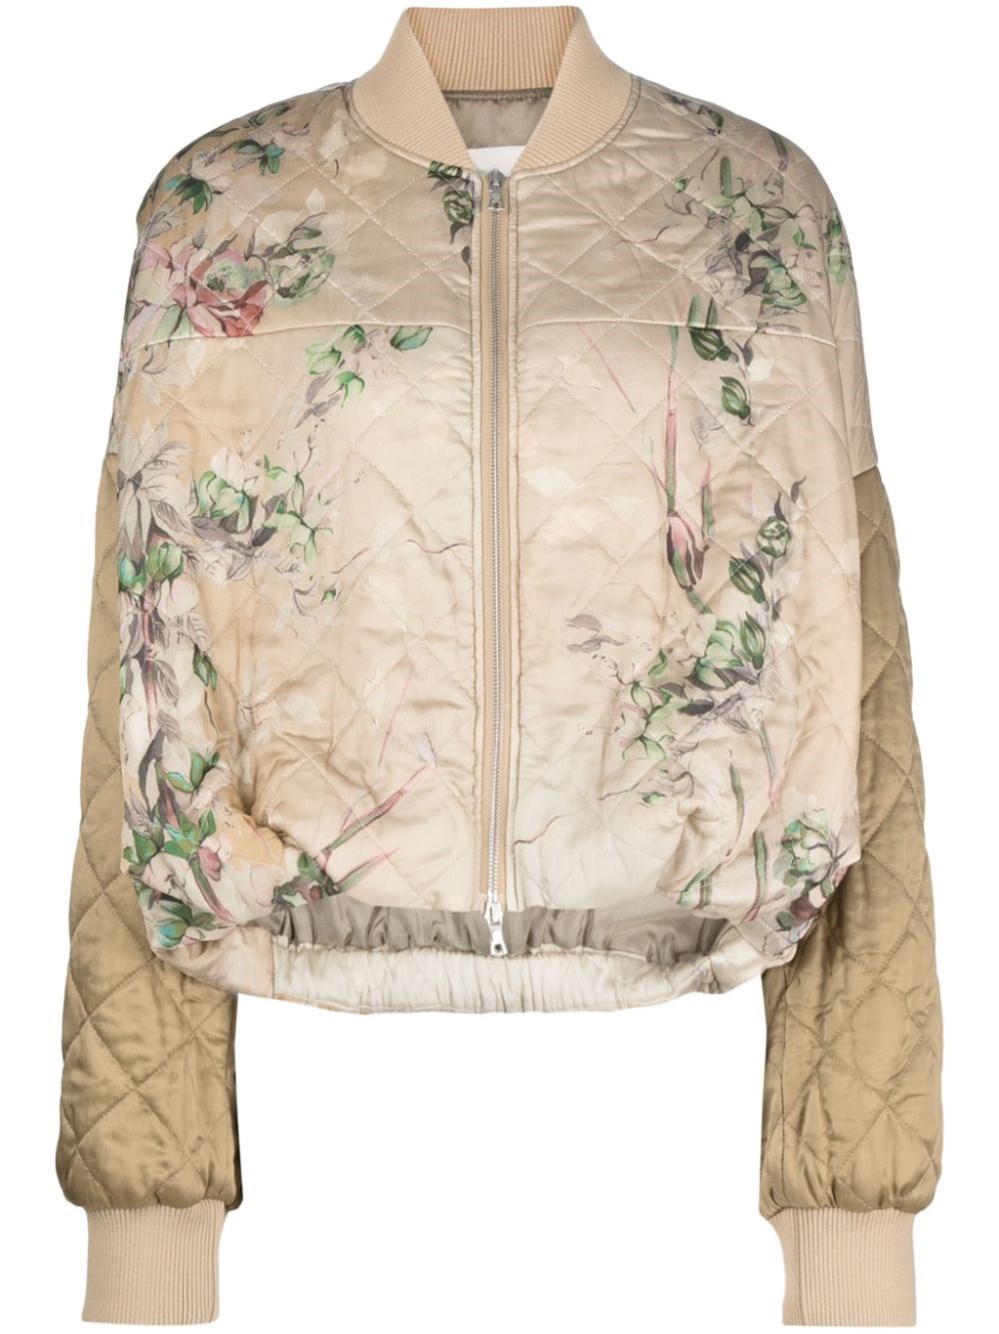 Dries Van Noten Women's Veston Quilted Satin Bomber Jacket - Ecru - Size Xs